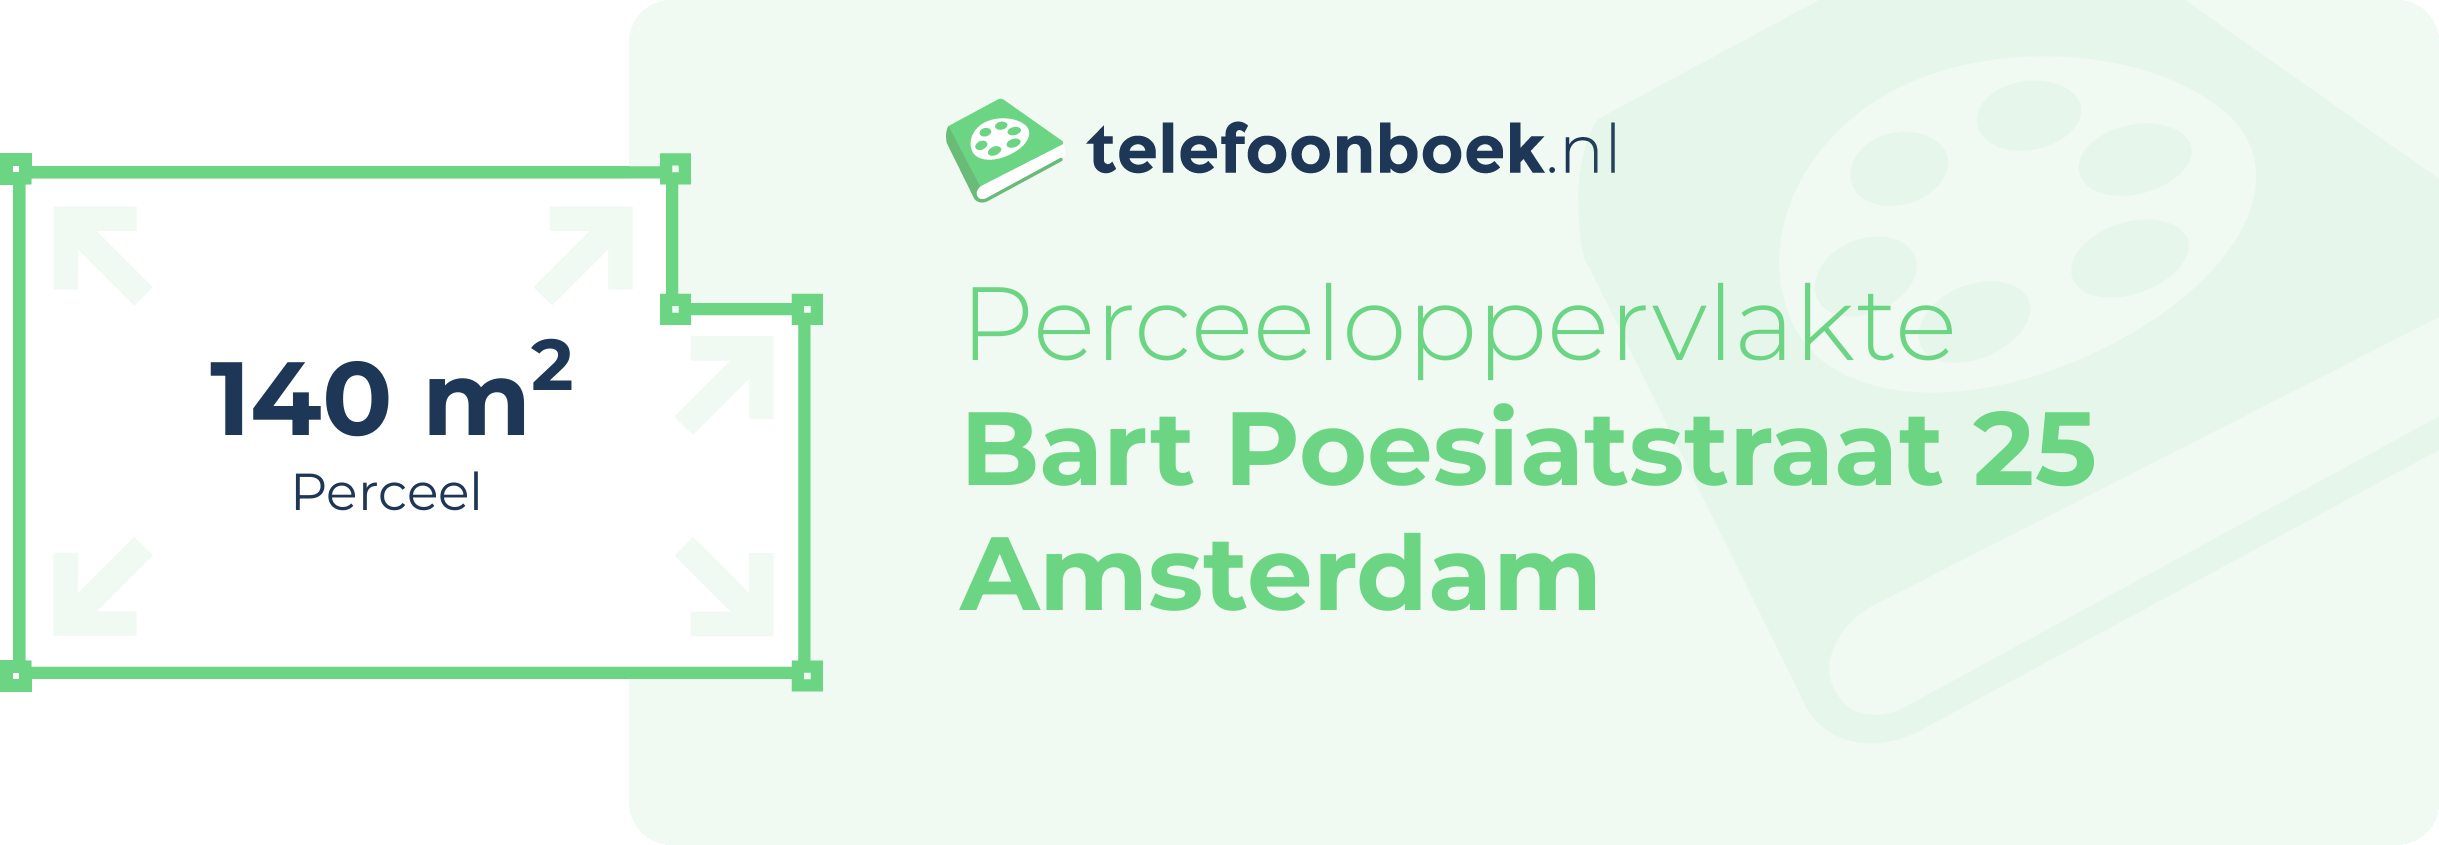 Perceeloppervlakte Bart Poesiatstraat 25 Amsterdam